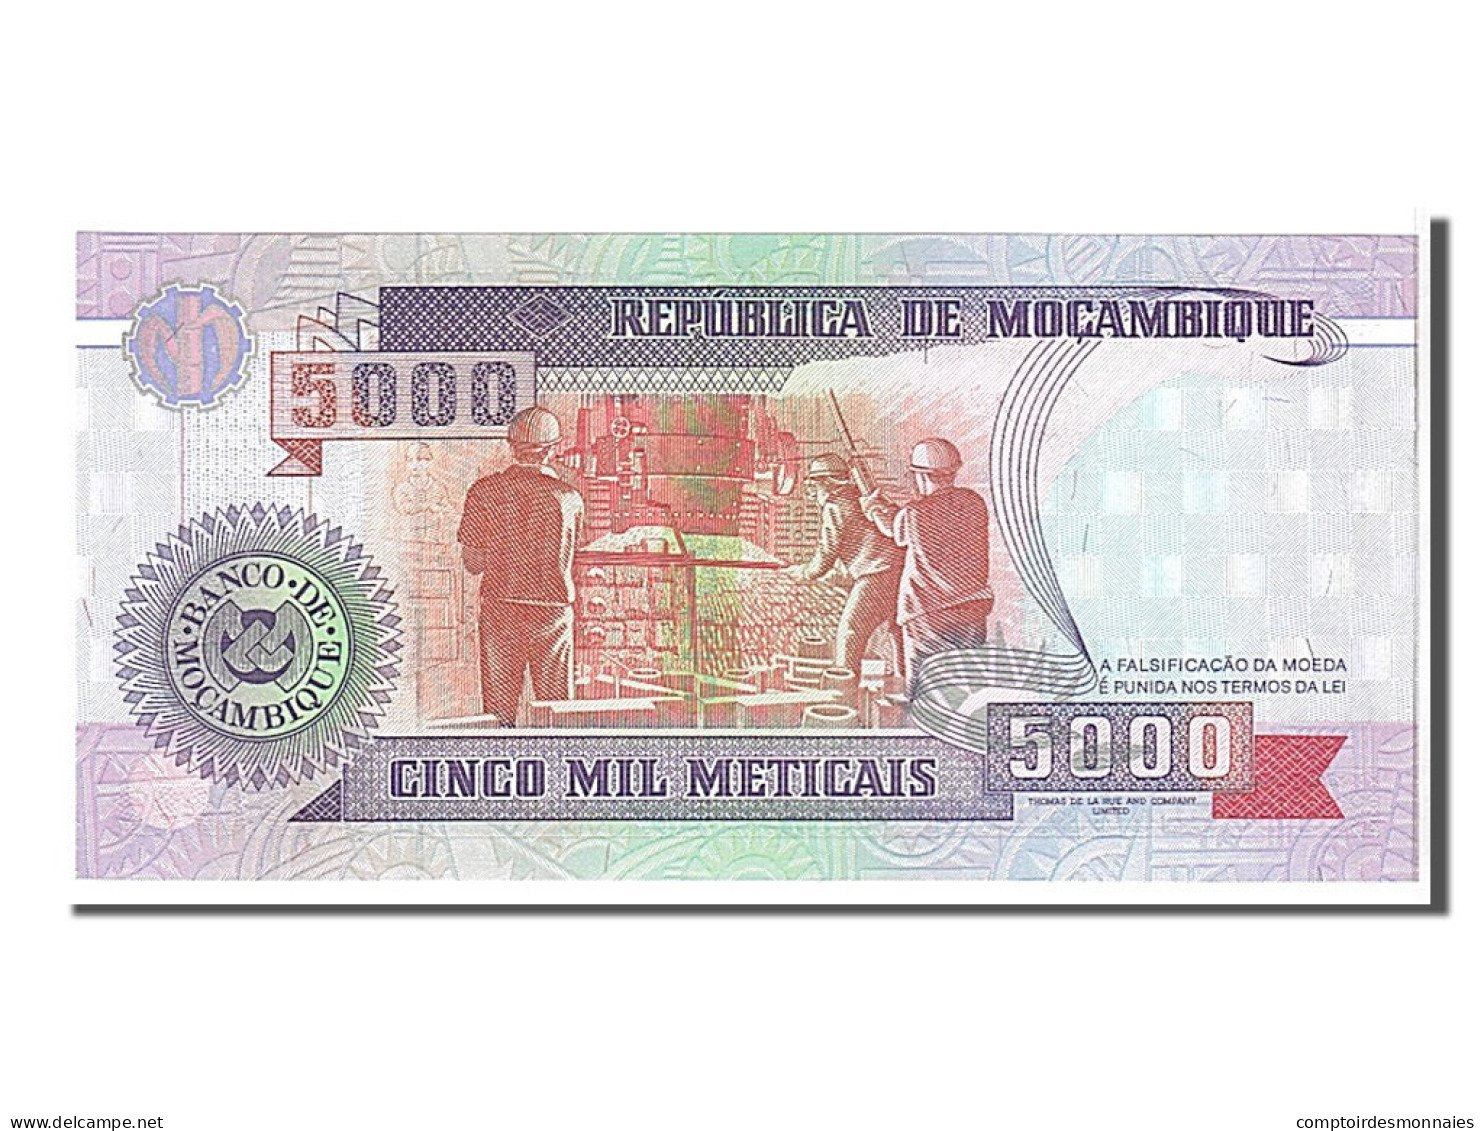 Billet, Mozambique, 5000 Meticais, 1991, KM:136, NEUF - Mozambique